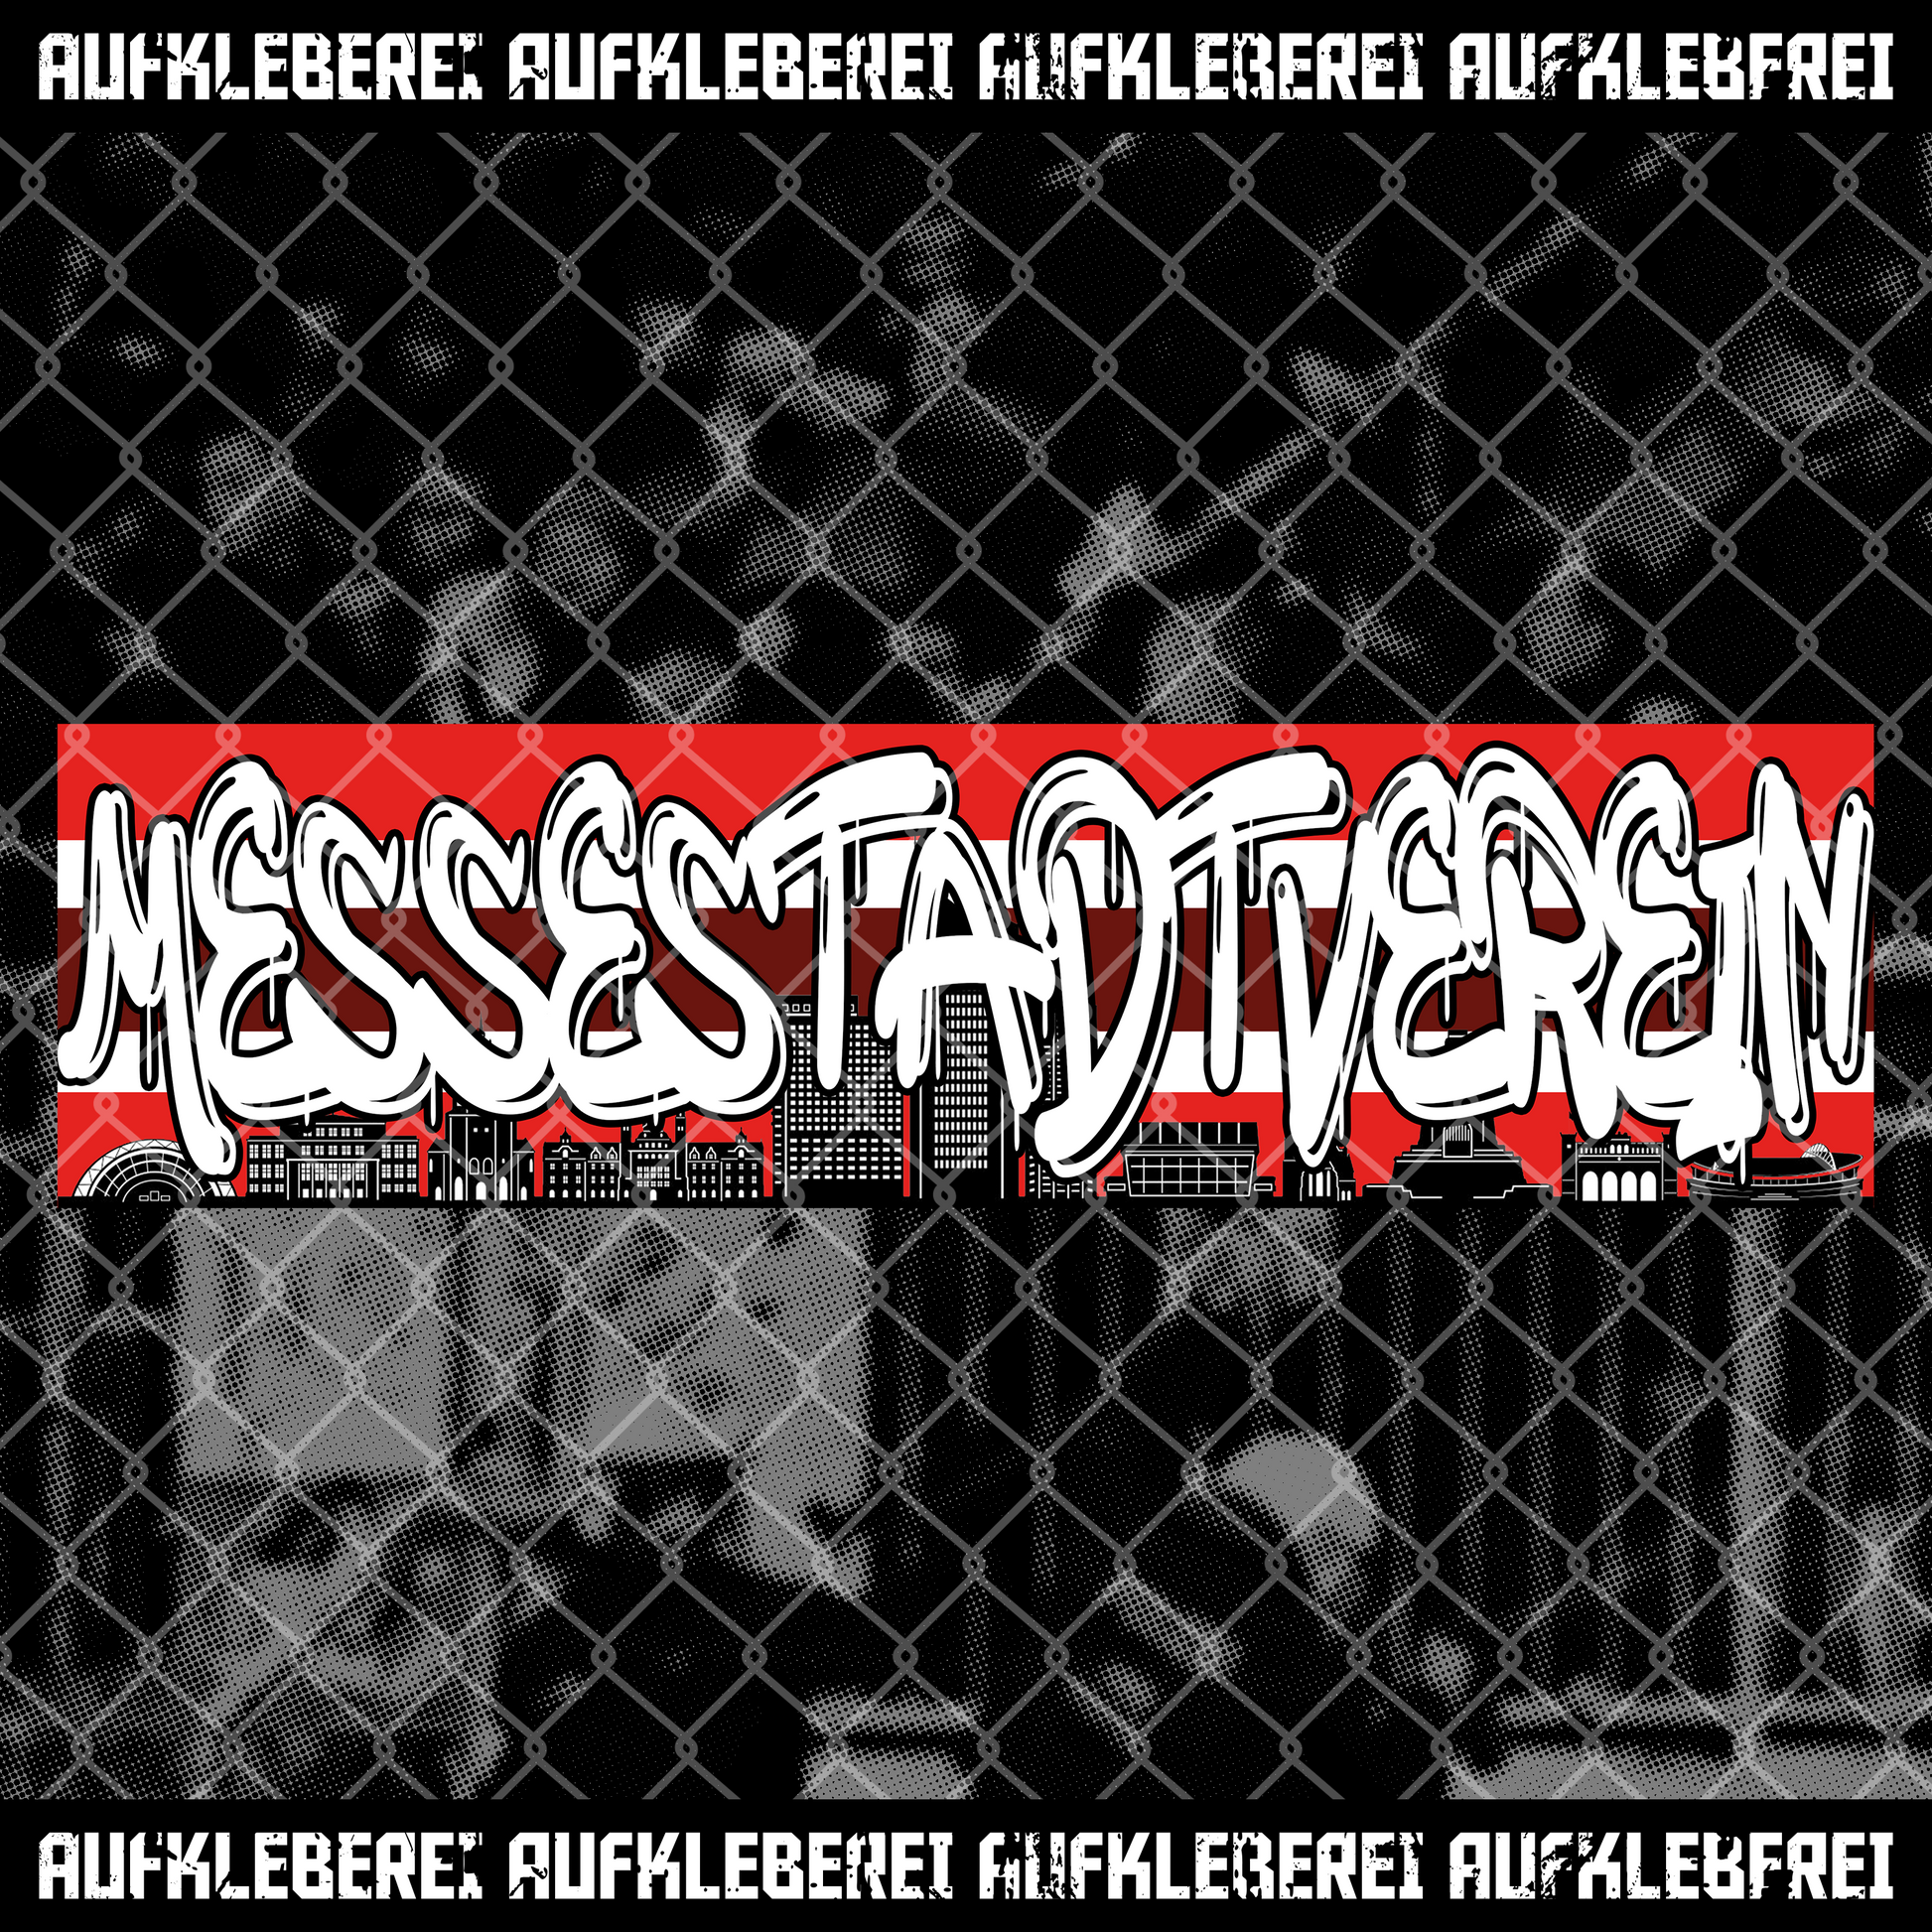 Sticker "Messestadtverein" - 25 Stück • Aufkleberei.com